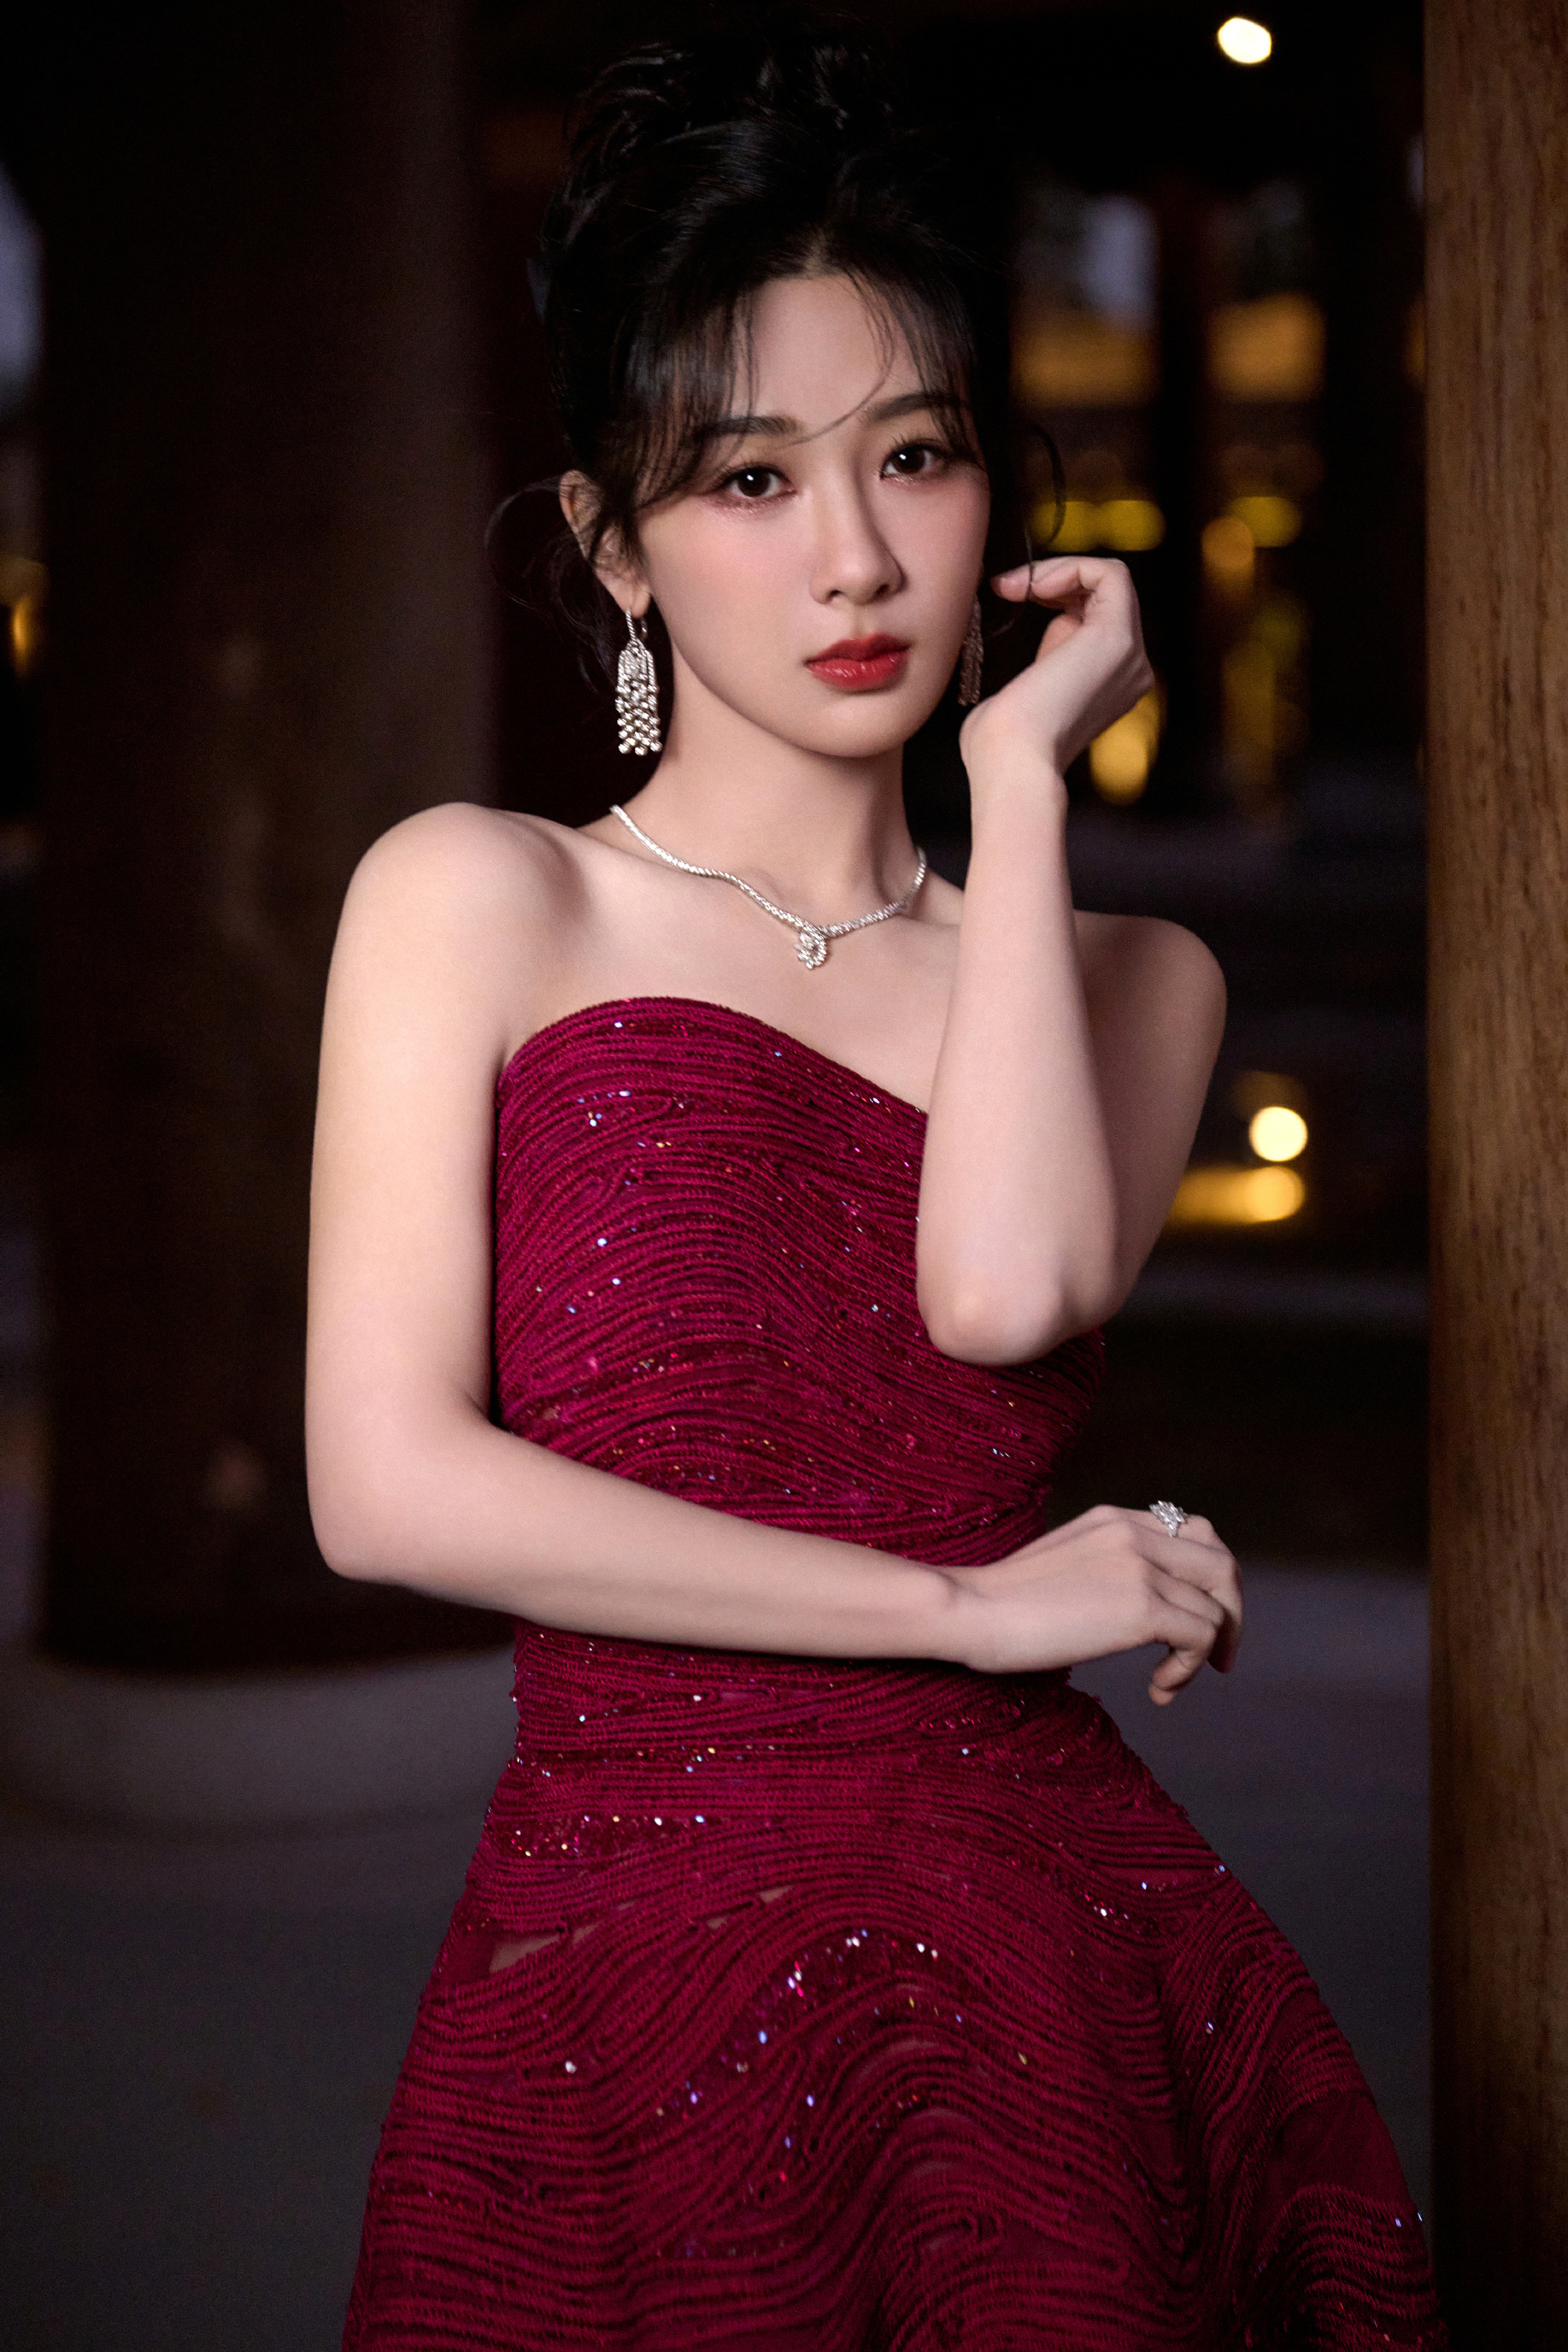 杨紫化身暗夜玫瑰,紫红色抹胸裙展现完美身材!